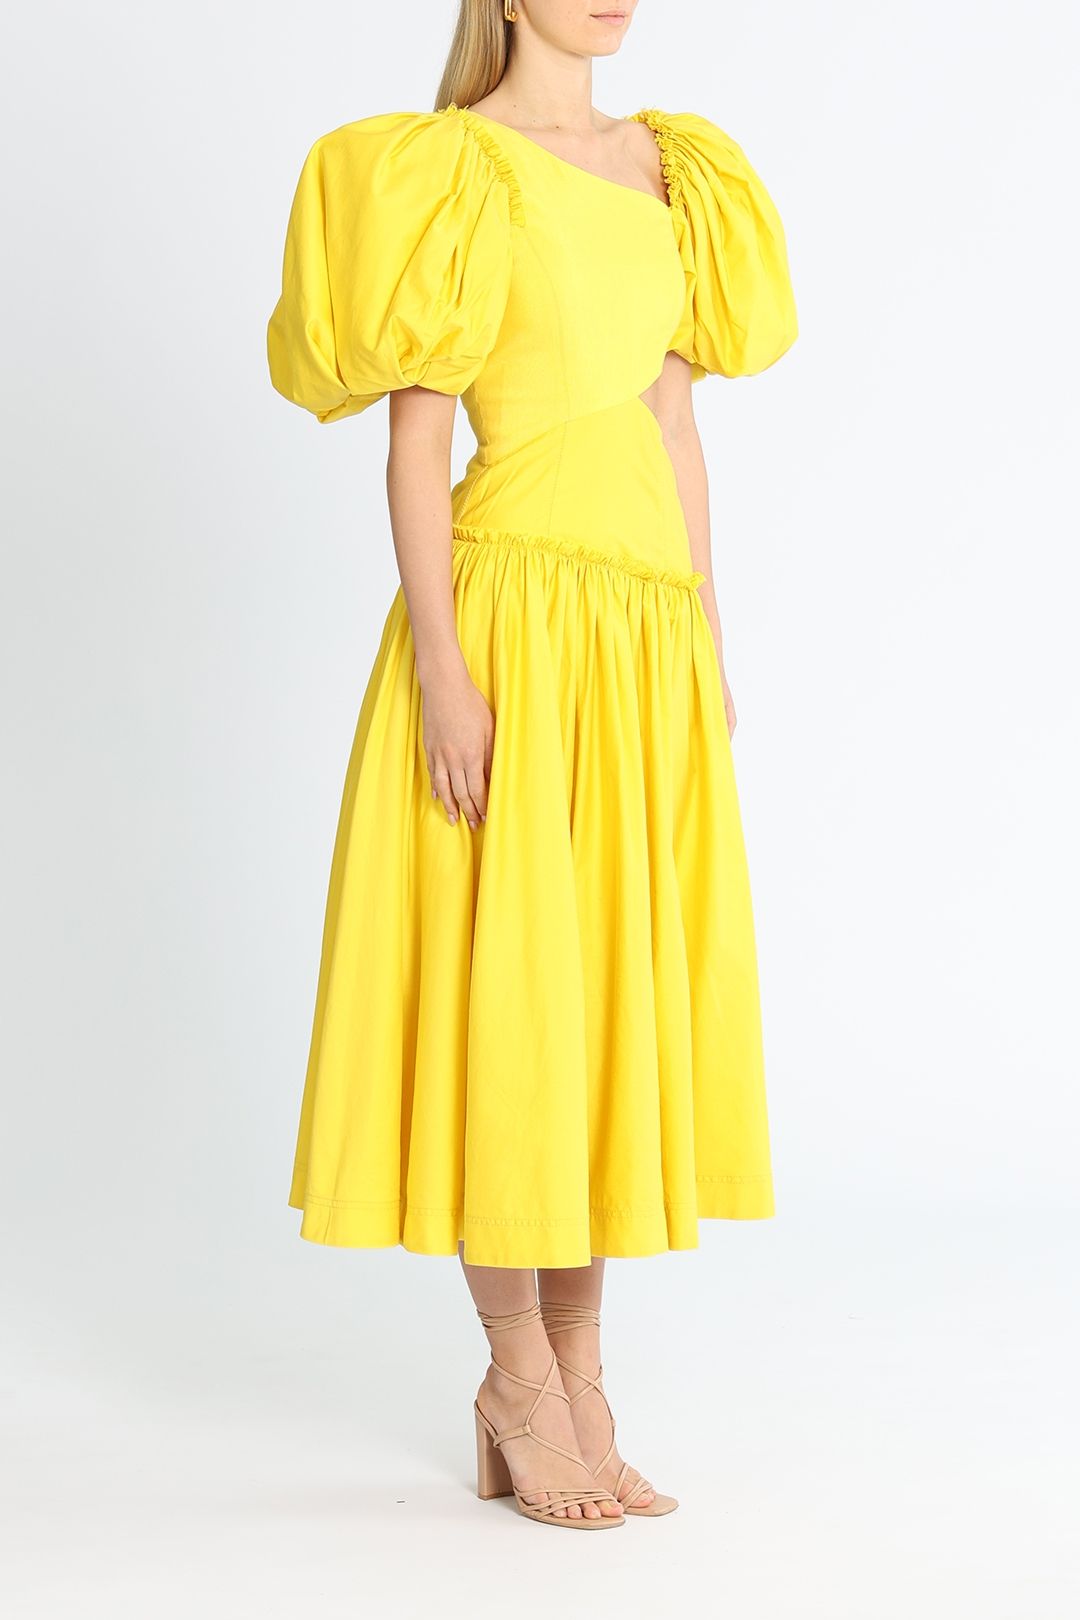 AJE Chateau Cut Out Midi Dress Yellow  Asymmetric